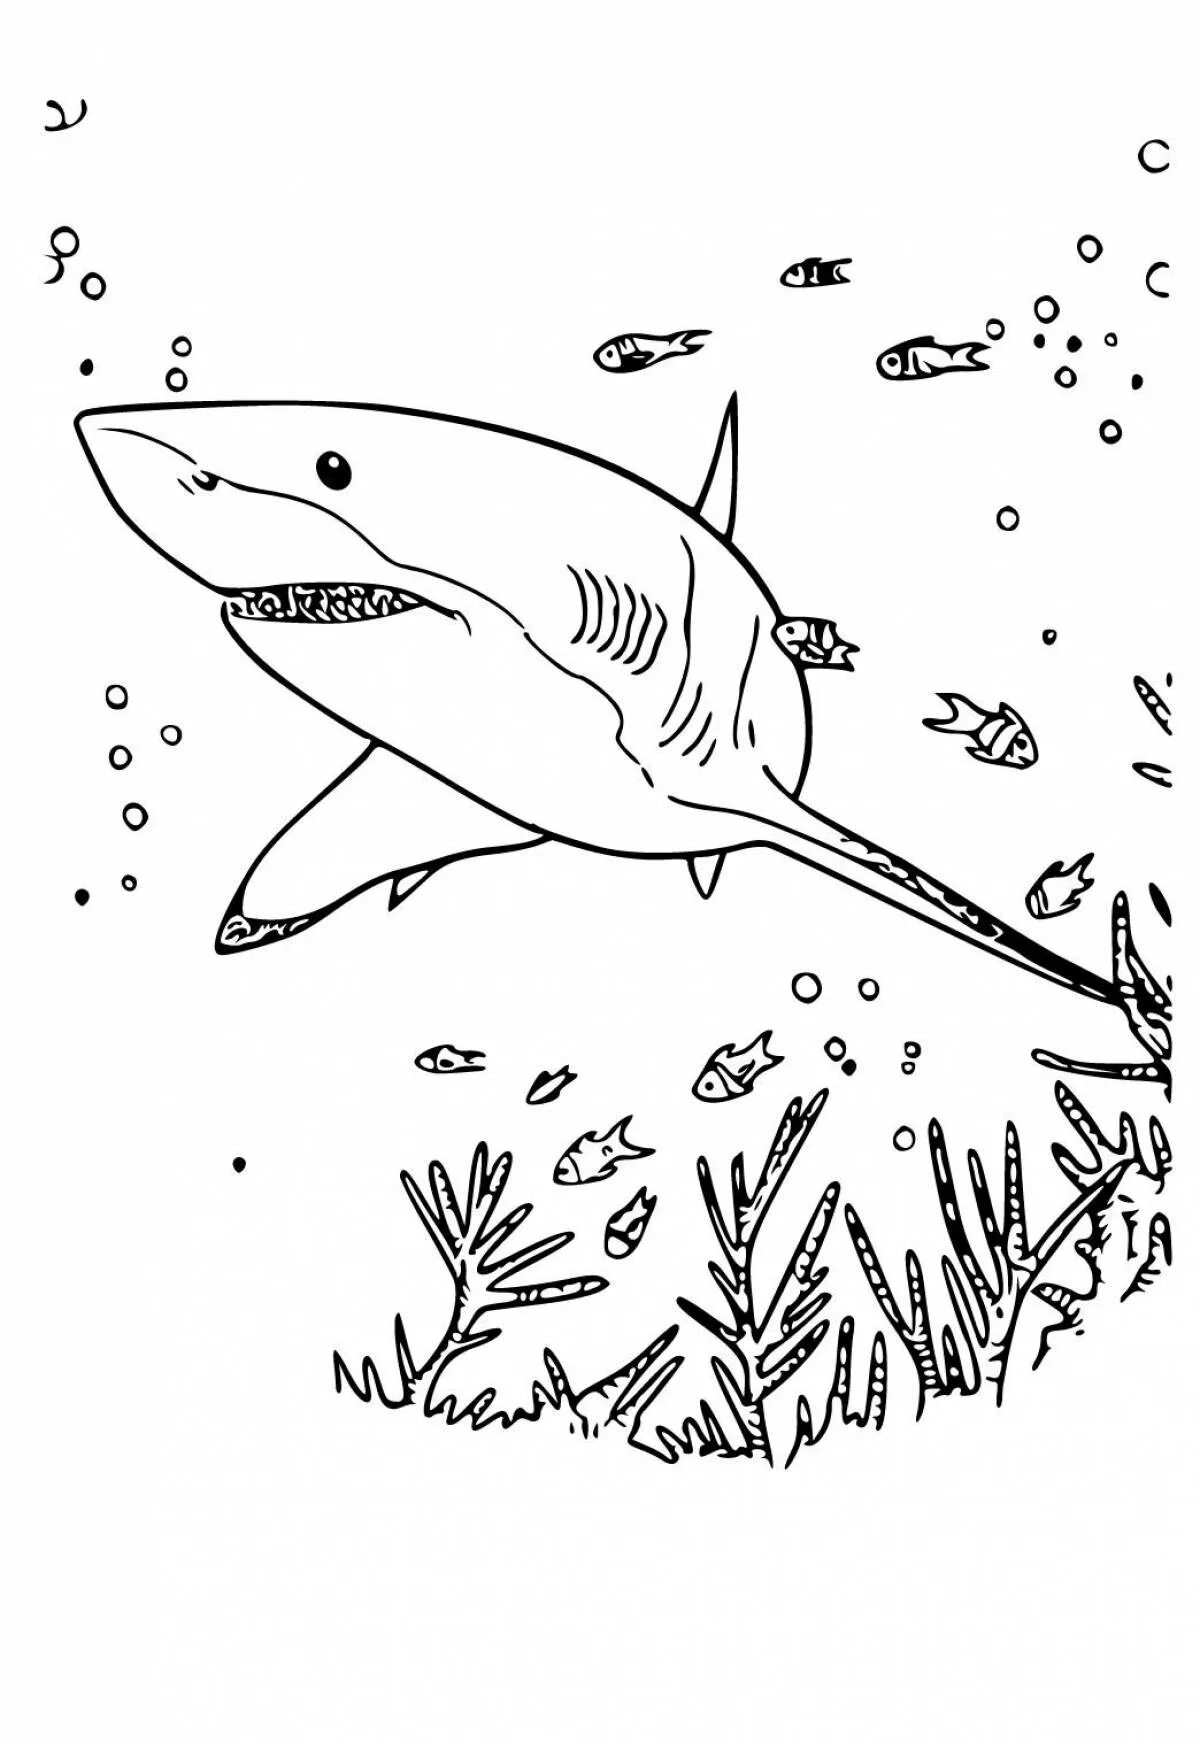 Раскраски акула. Акула раскраска. Акула раскраска для детей. Акула рисунок для детей раскраска. Морские обитатели раскраска акула.